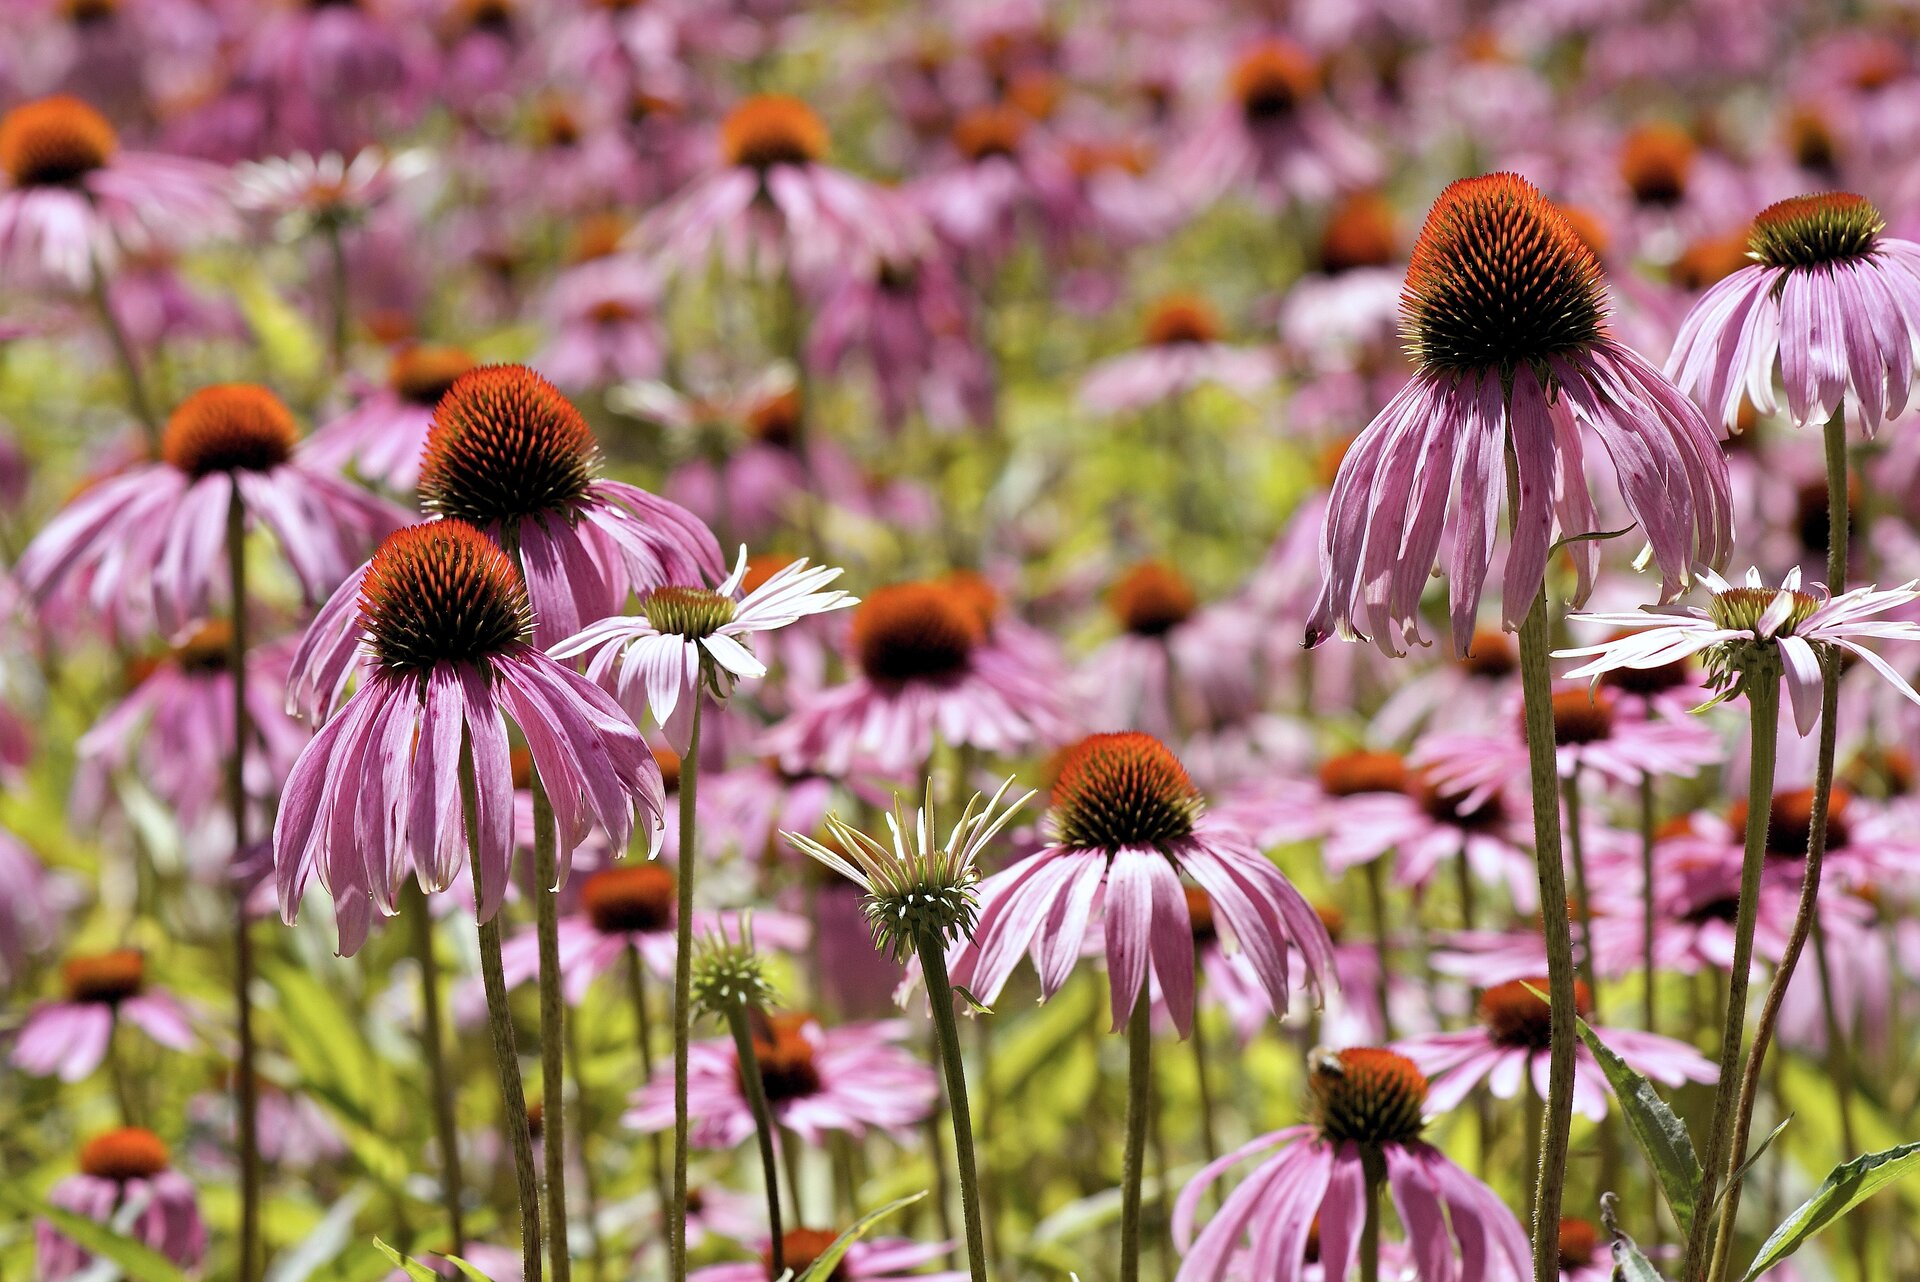 Zdjęcie przedstawia pole kwiatów jeżówki purpurowej. Kwiaty mają języczkowate płatki. Płatki skierowane są w dół od osadnika kwiatostanowego, który jest wypukły. 